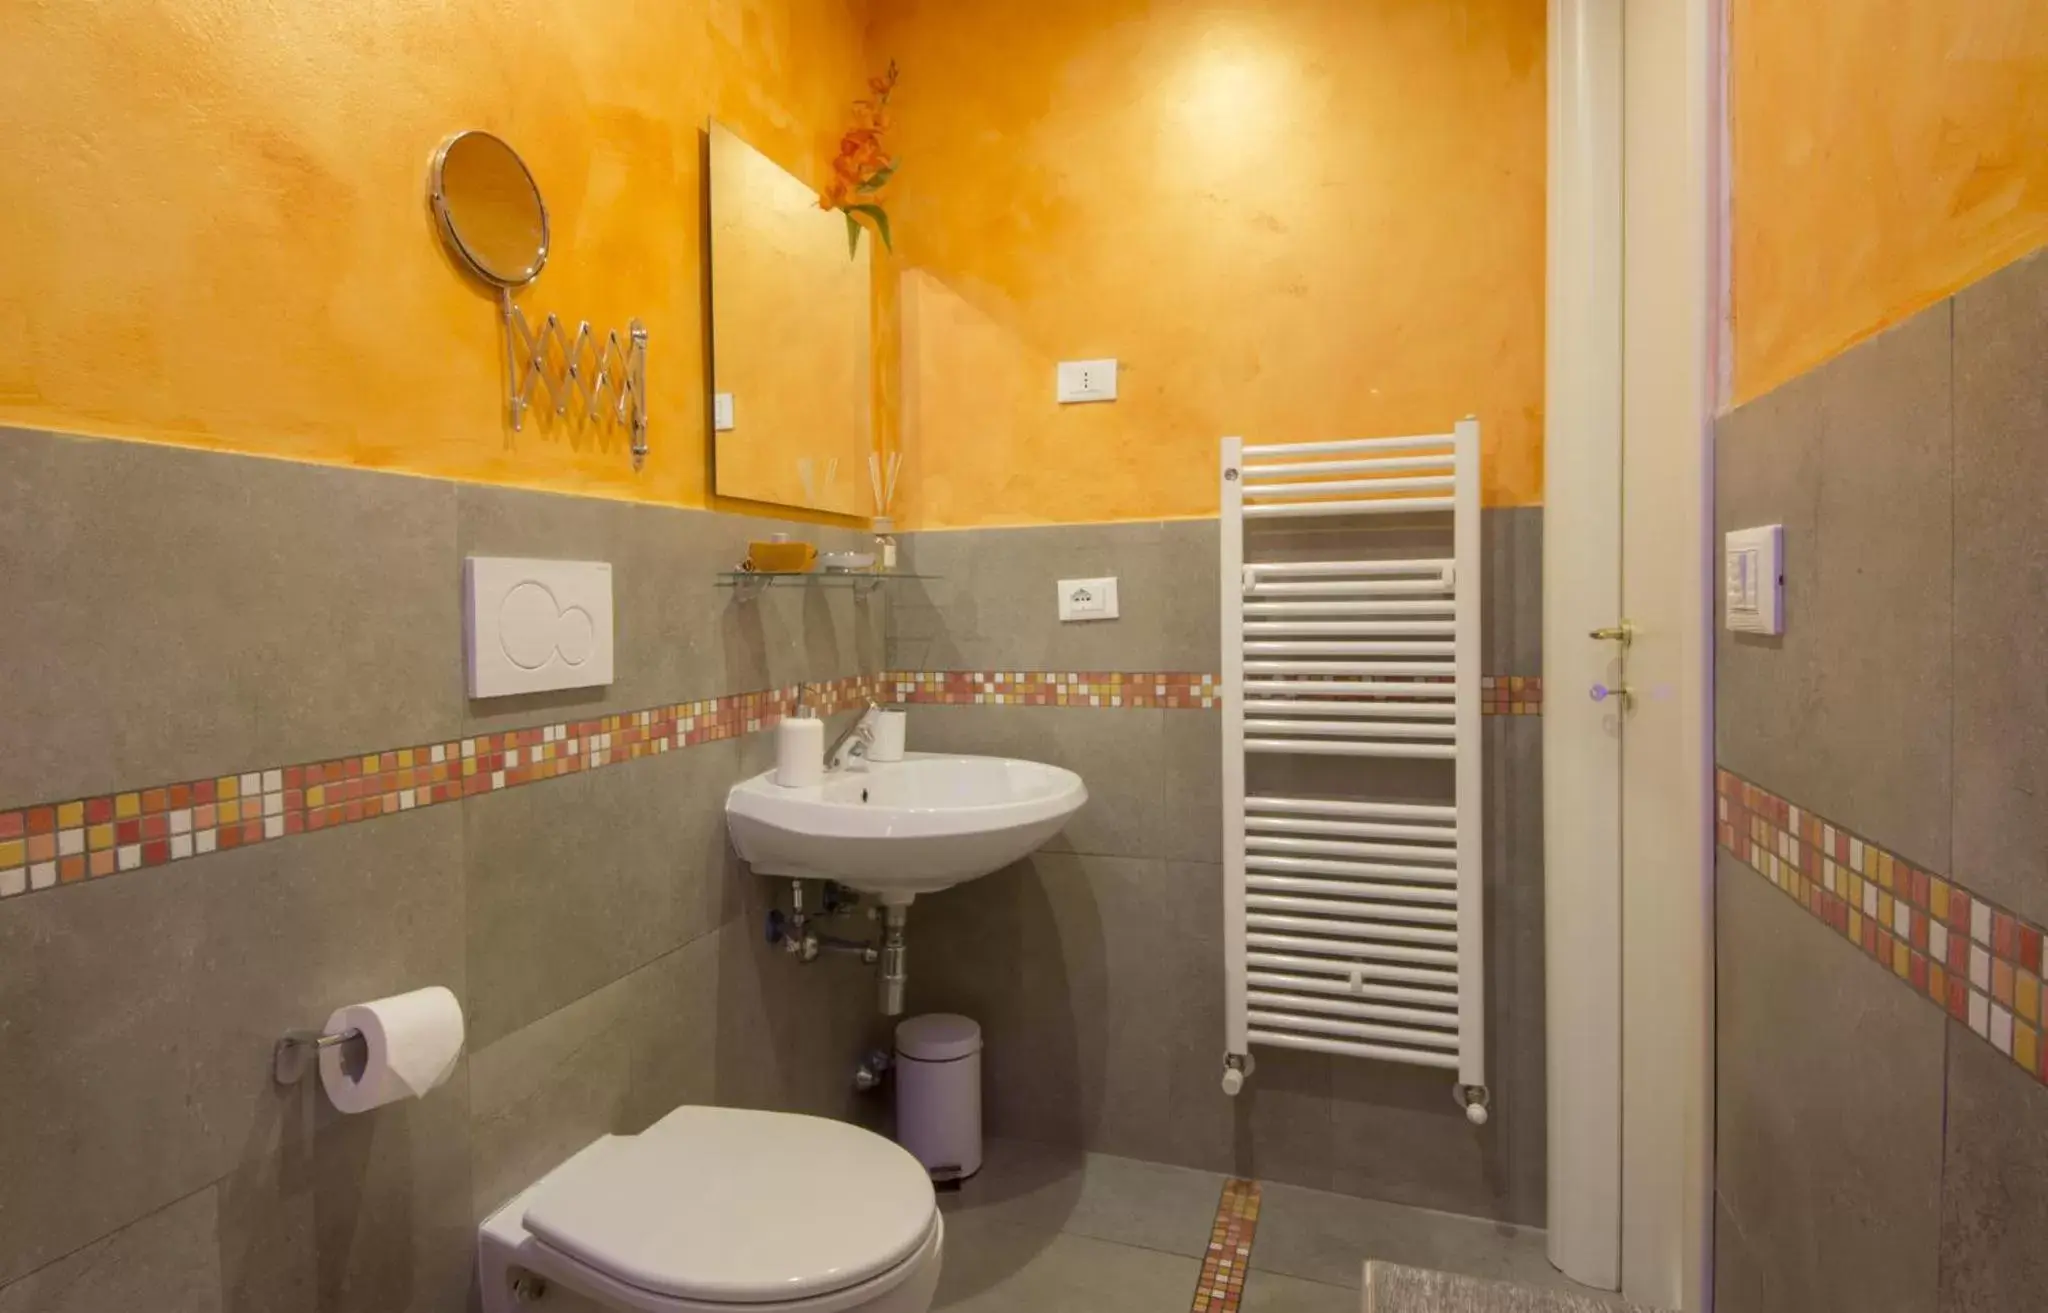 Bathroom in Ridolfi Guest House